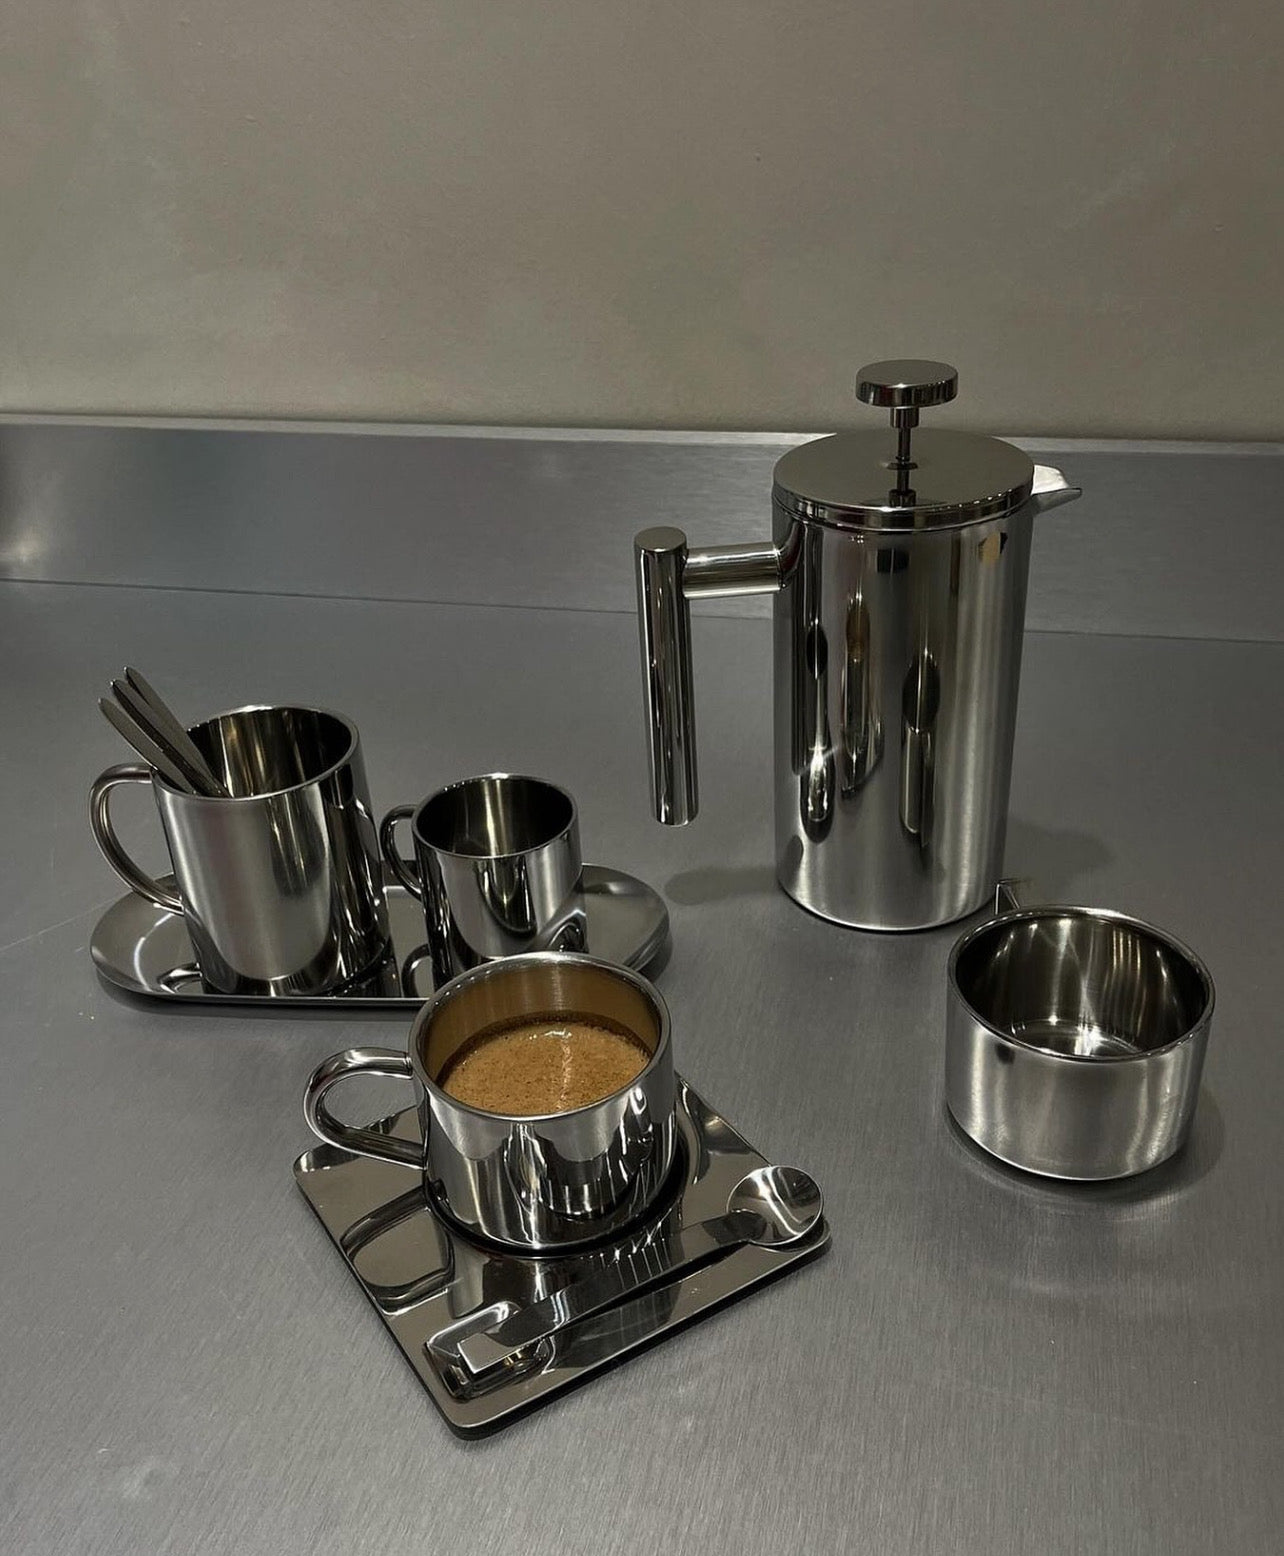 وعاء قهوة فرنسي للضغط من الفولاذ المقاوم للصدأ عازل بطبقتين (مرآة)